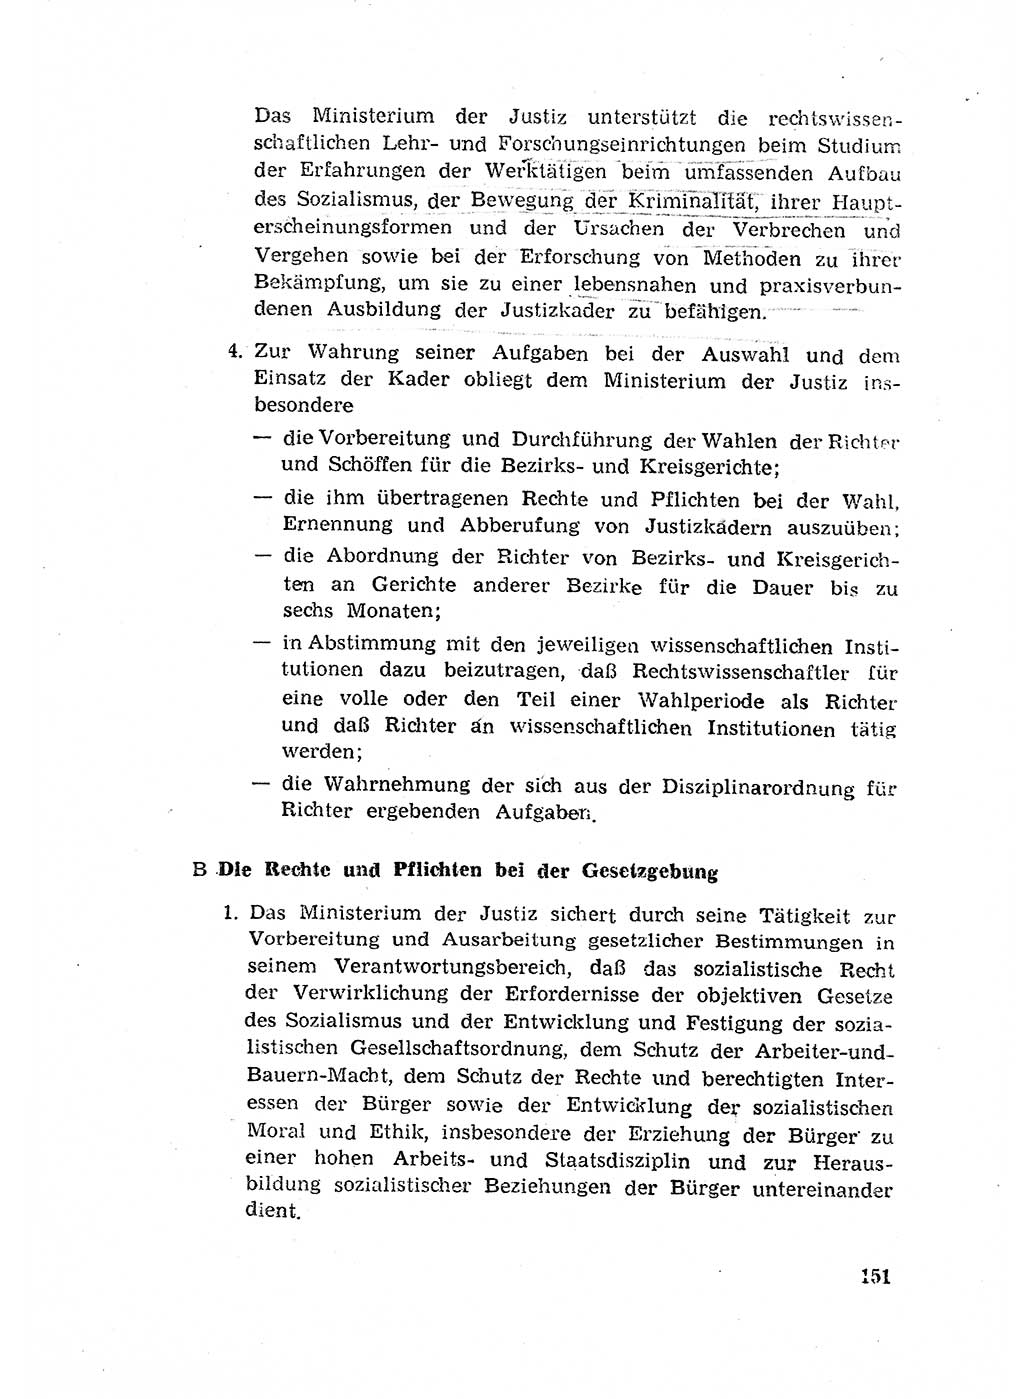 Rechtspflegeerlaß [Deutsche Demokratische Republik (DDR)] 1963, Seite 151 (R.-Pfl.-Erl. DDR 1963, S. 151)